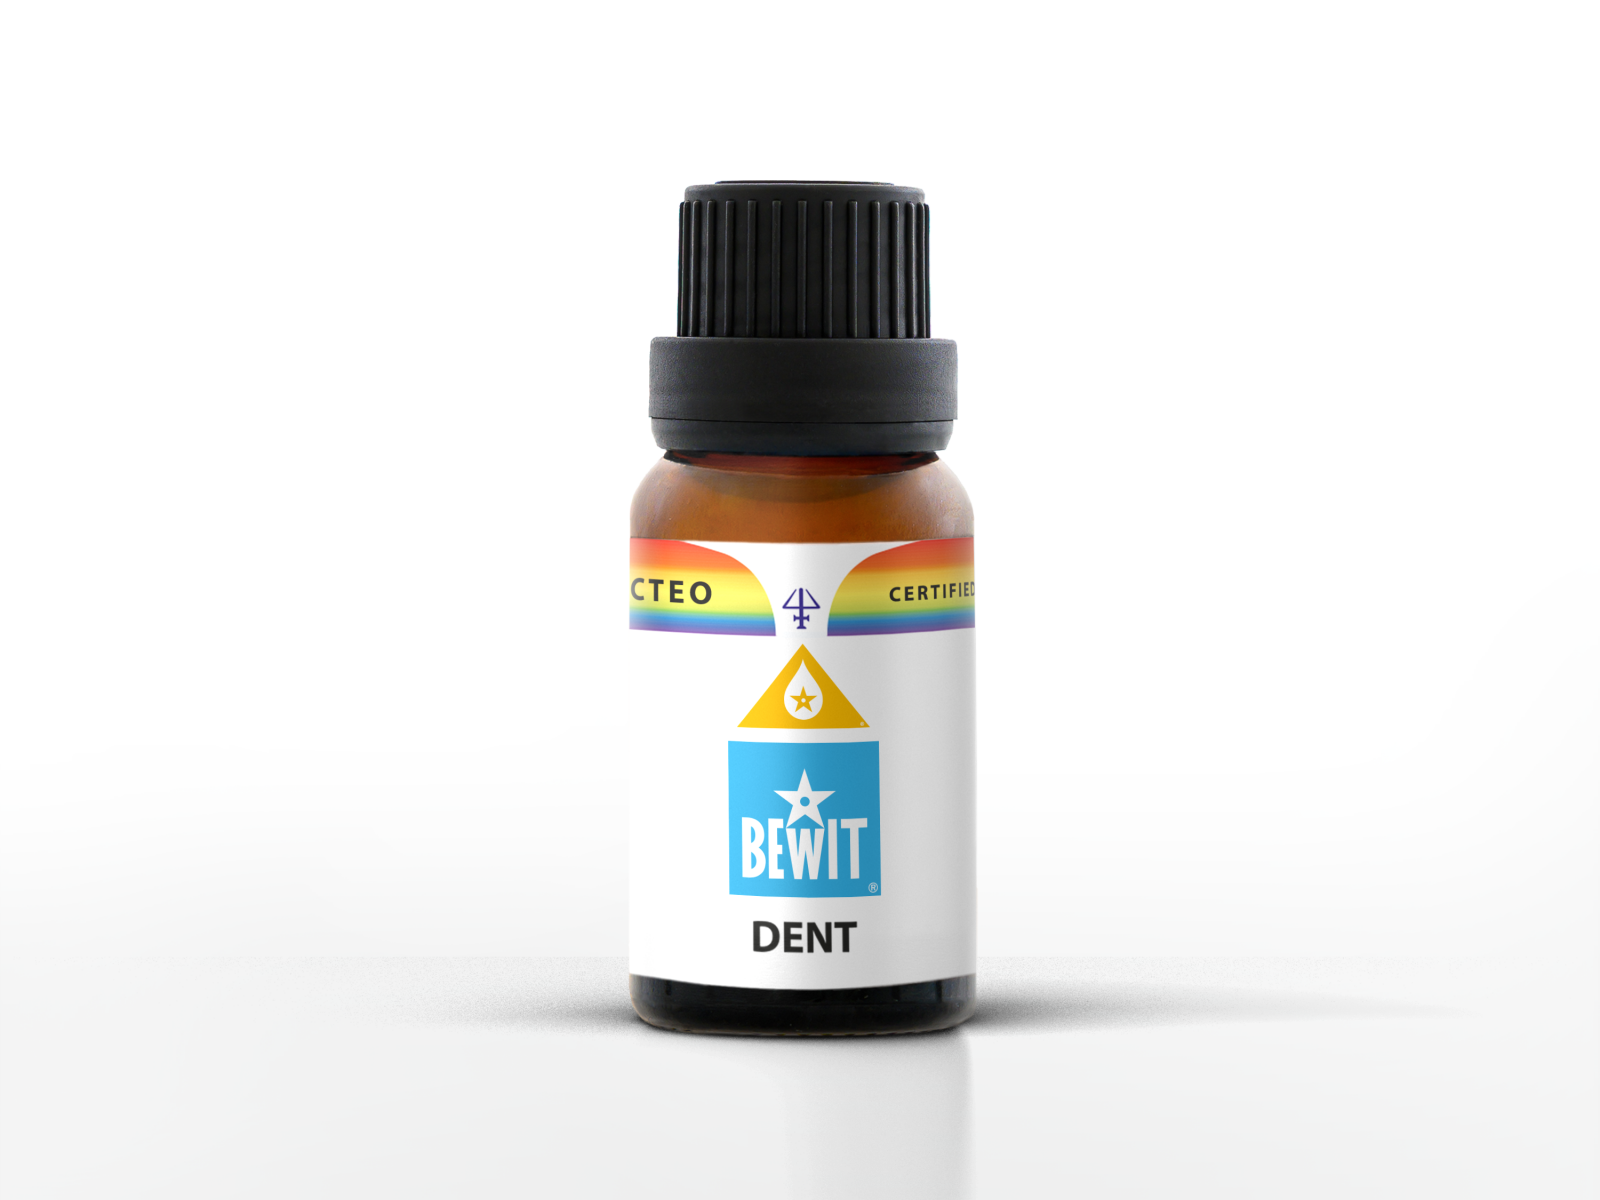 BEWIT DENT - A unique blend of essential oils - 1